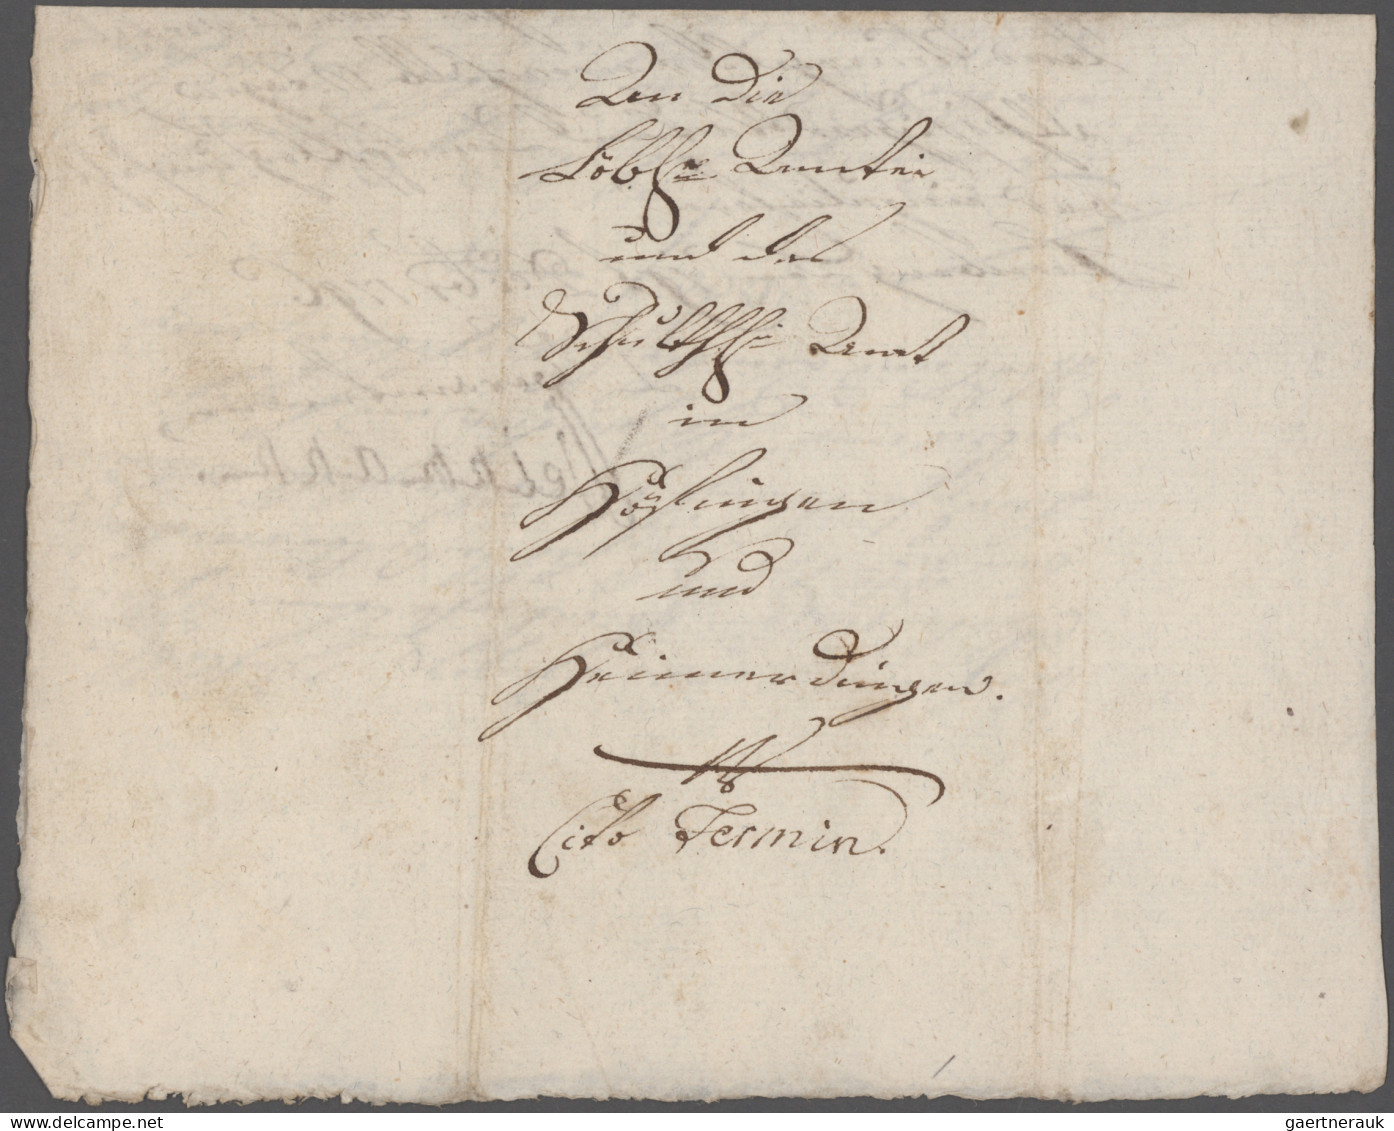 Württemberg - Marken und Briefe: 1635/1810, interessanter Bestand mit Altbriefen